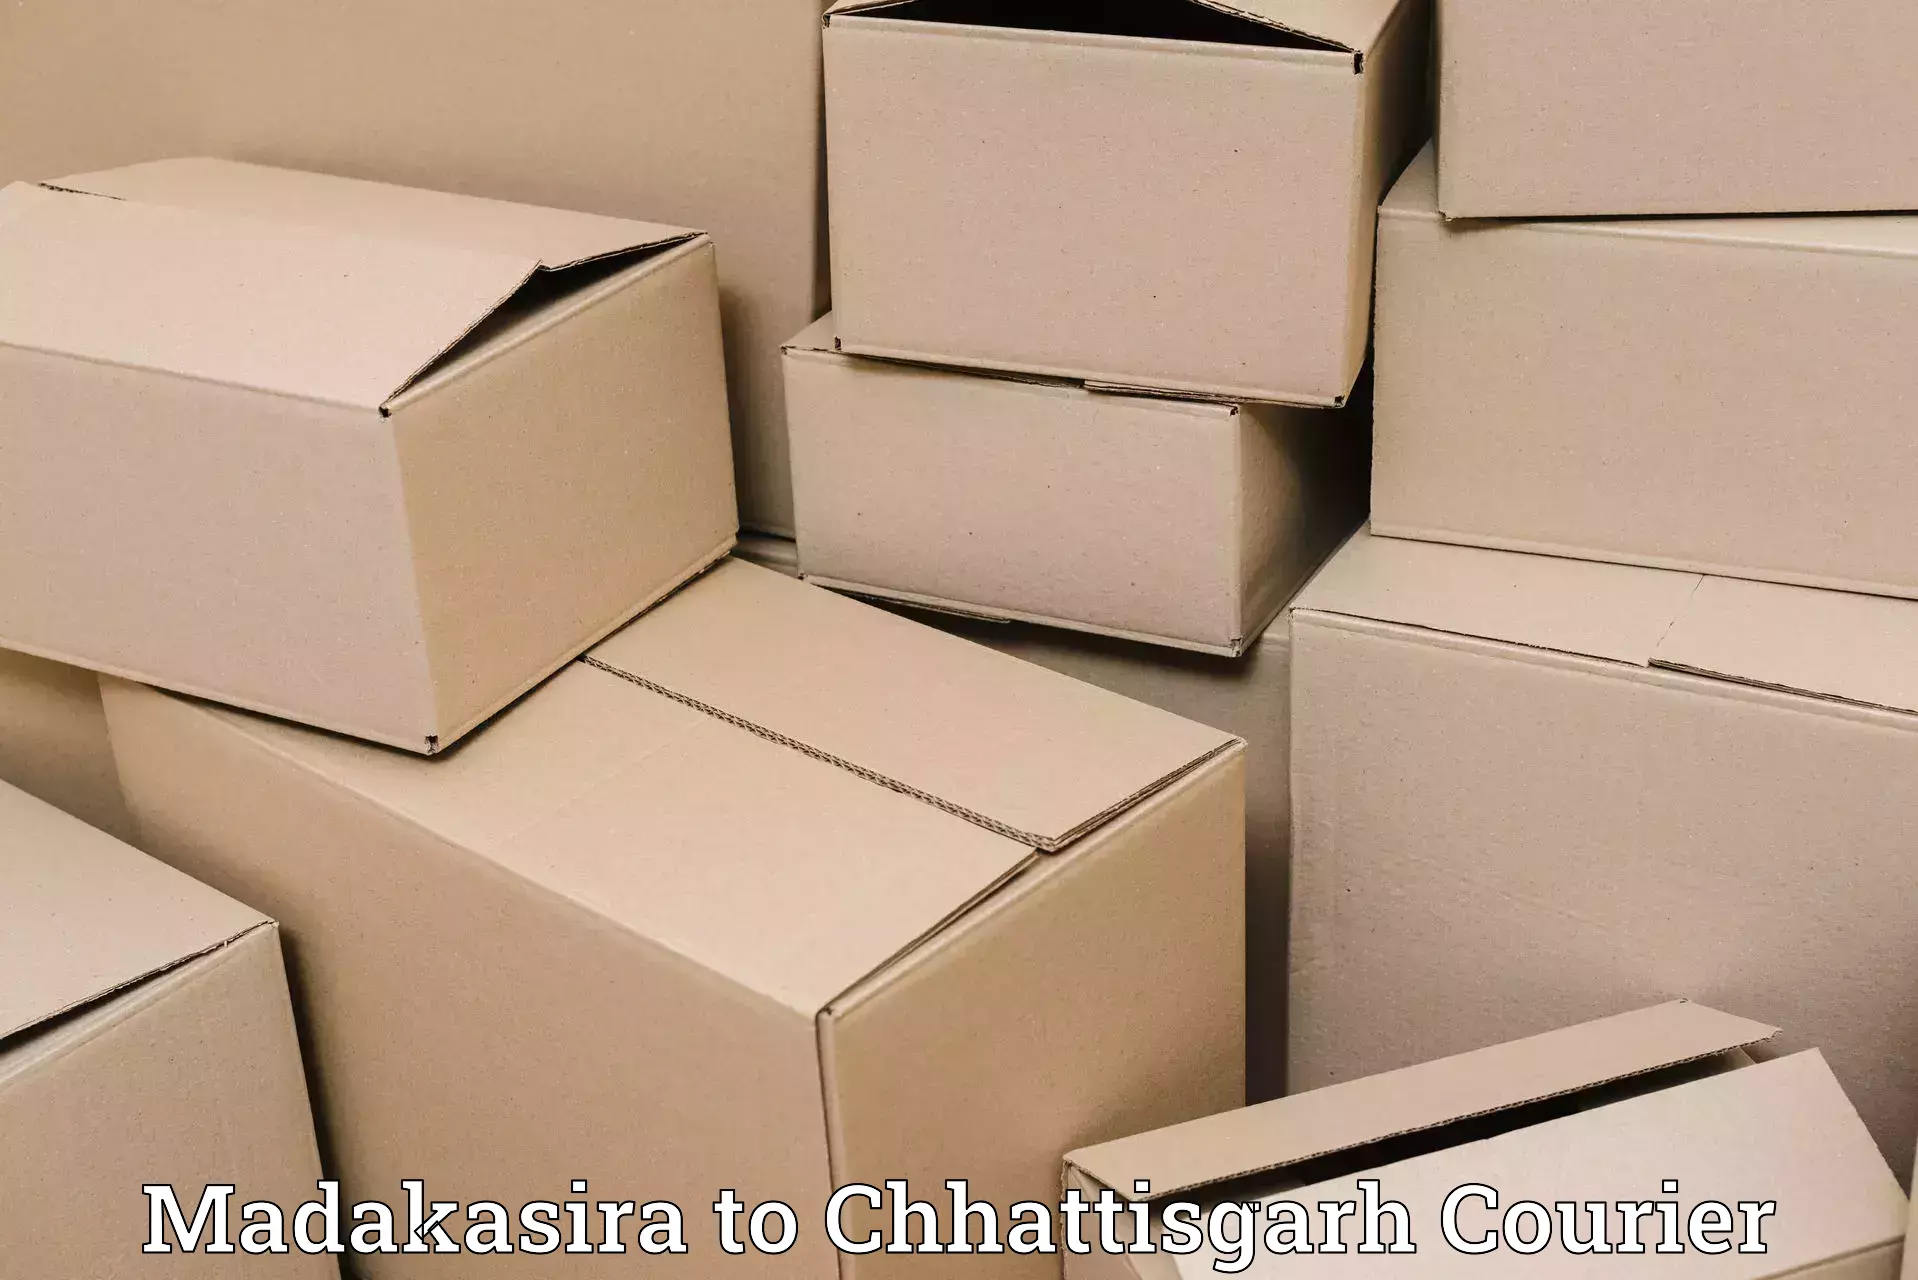 Global shipping solutions Madakasira to Chhattisgarh